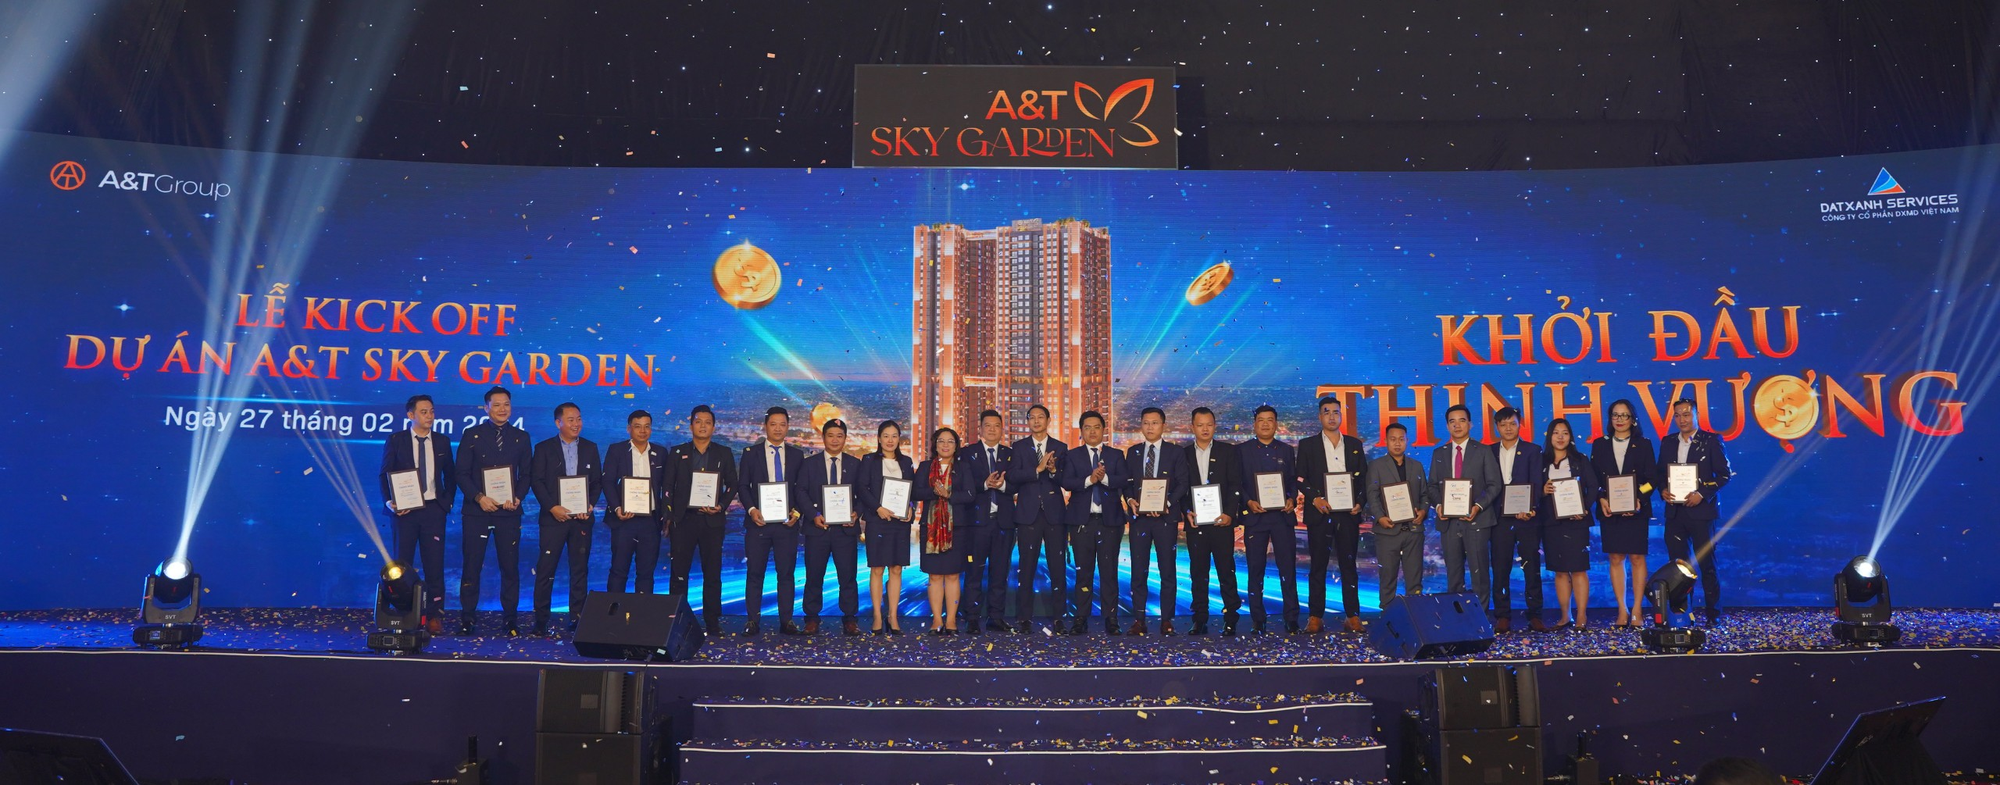 Nhà phát triển dự án DXMD Vietnam và các đối tác phân phối dự án A&T Sky Garden